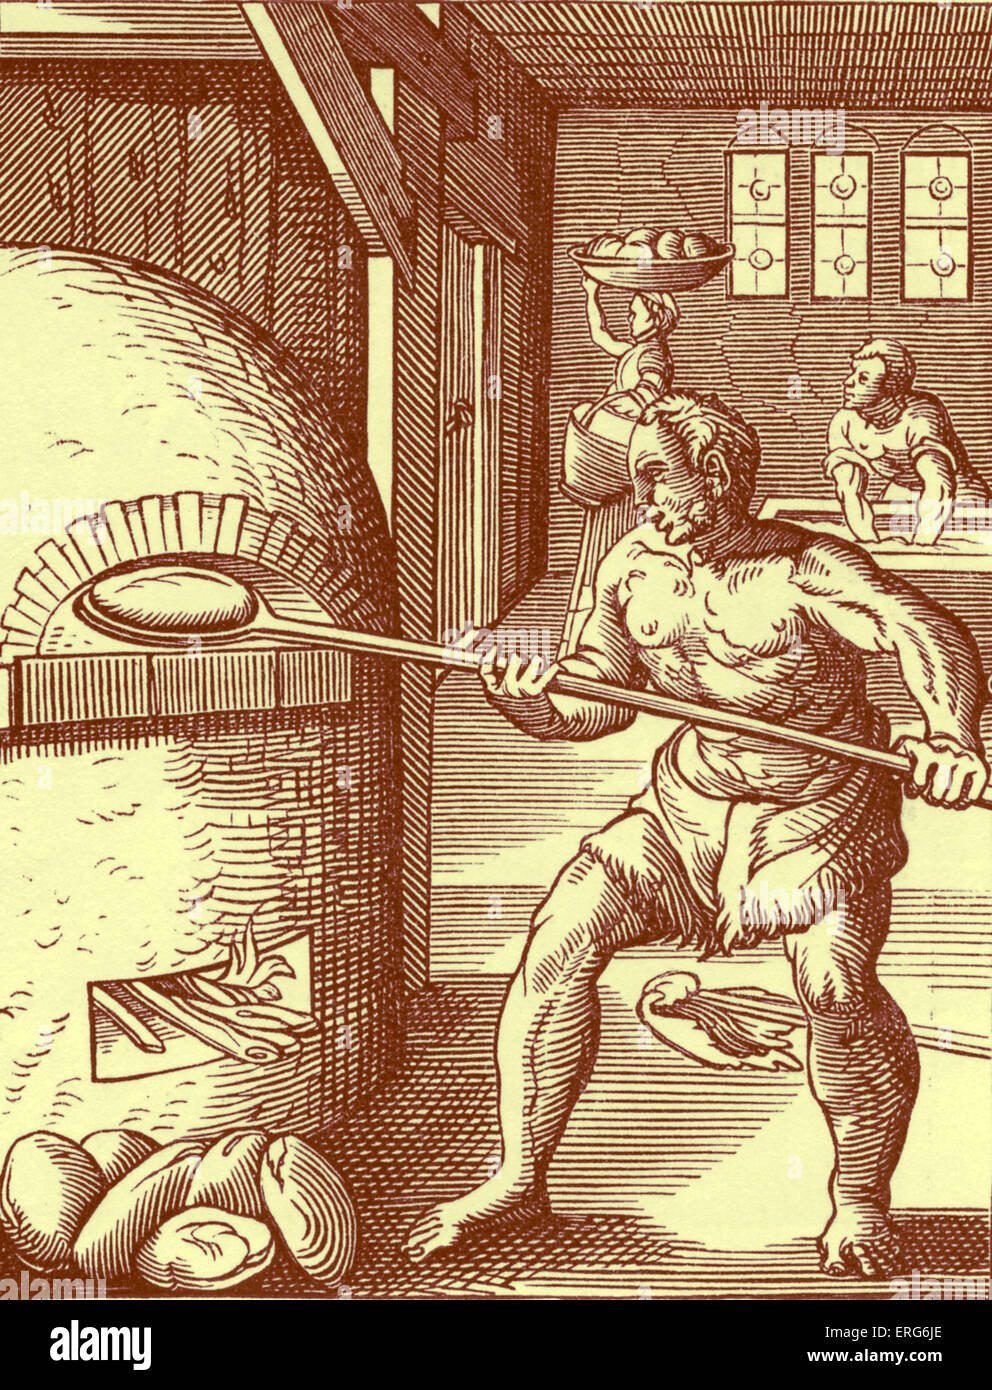 Le boulanger par Jost Amman, reproduit à partir d'une gravure du xvie siècle. L'artiste suisse, 13 juin, 1539 - 17 mars, 1591. Banque D'Images